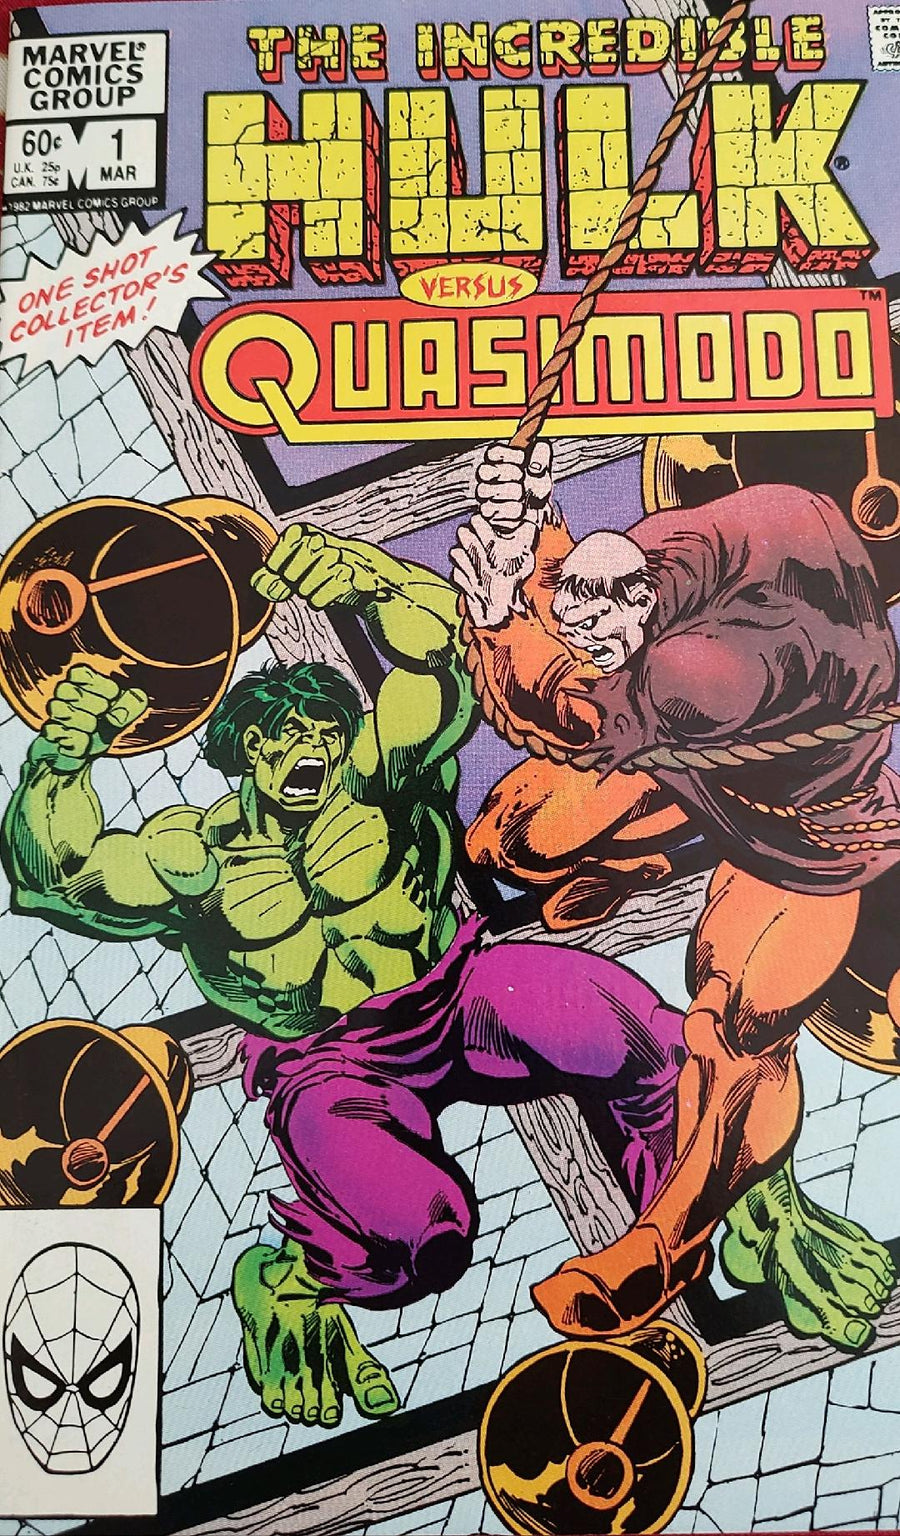 The Incredible Hulk versus Quasimodo #1 Comic Book Cover